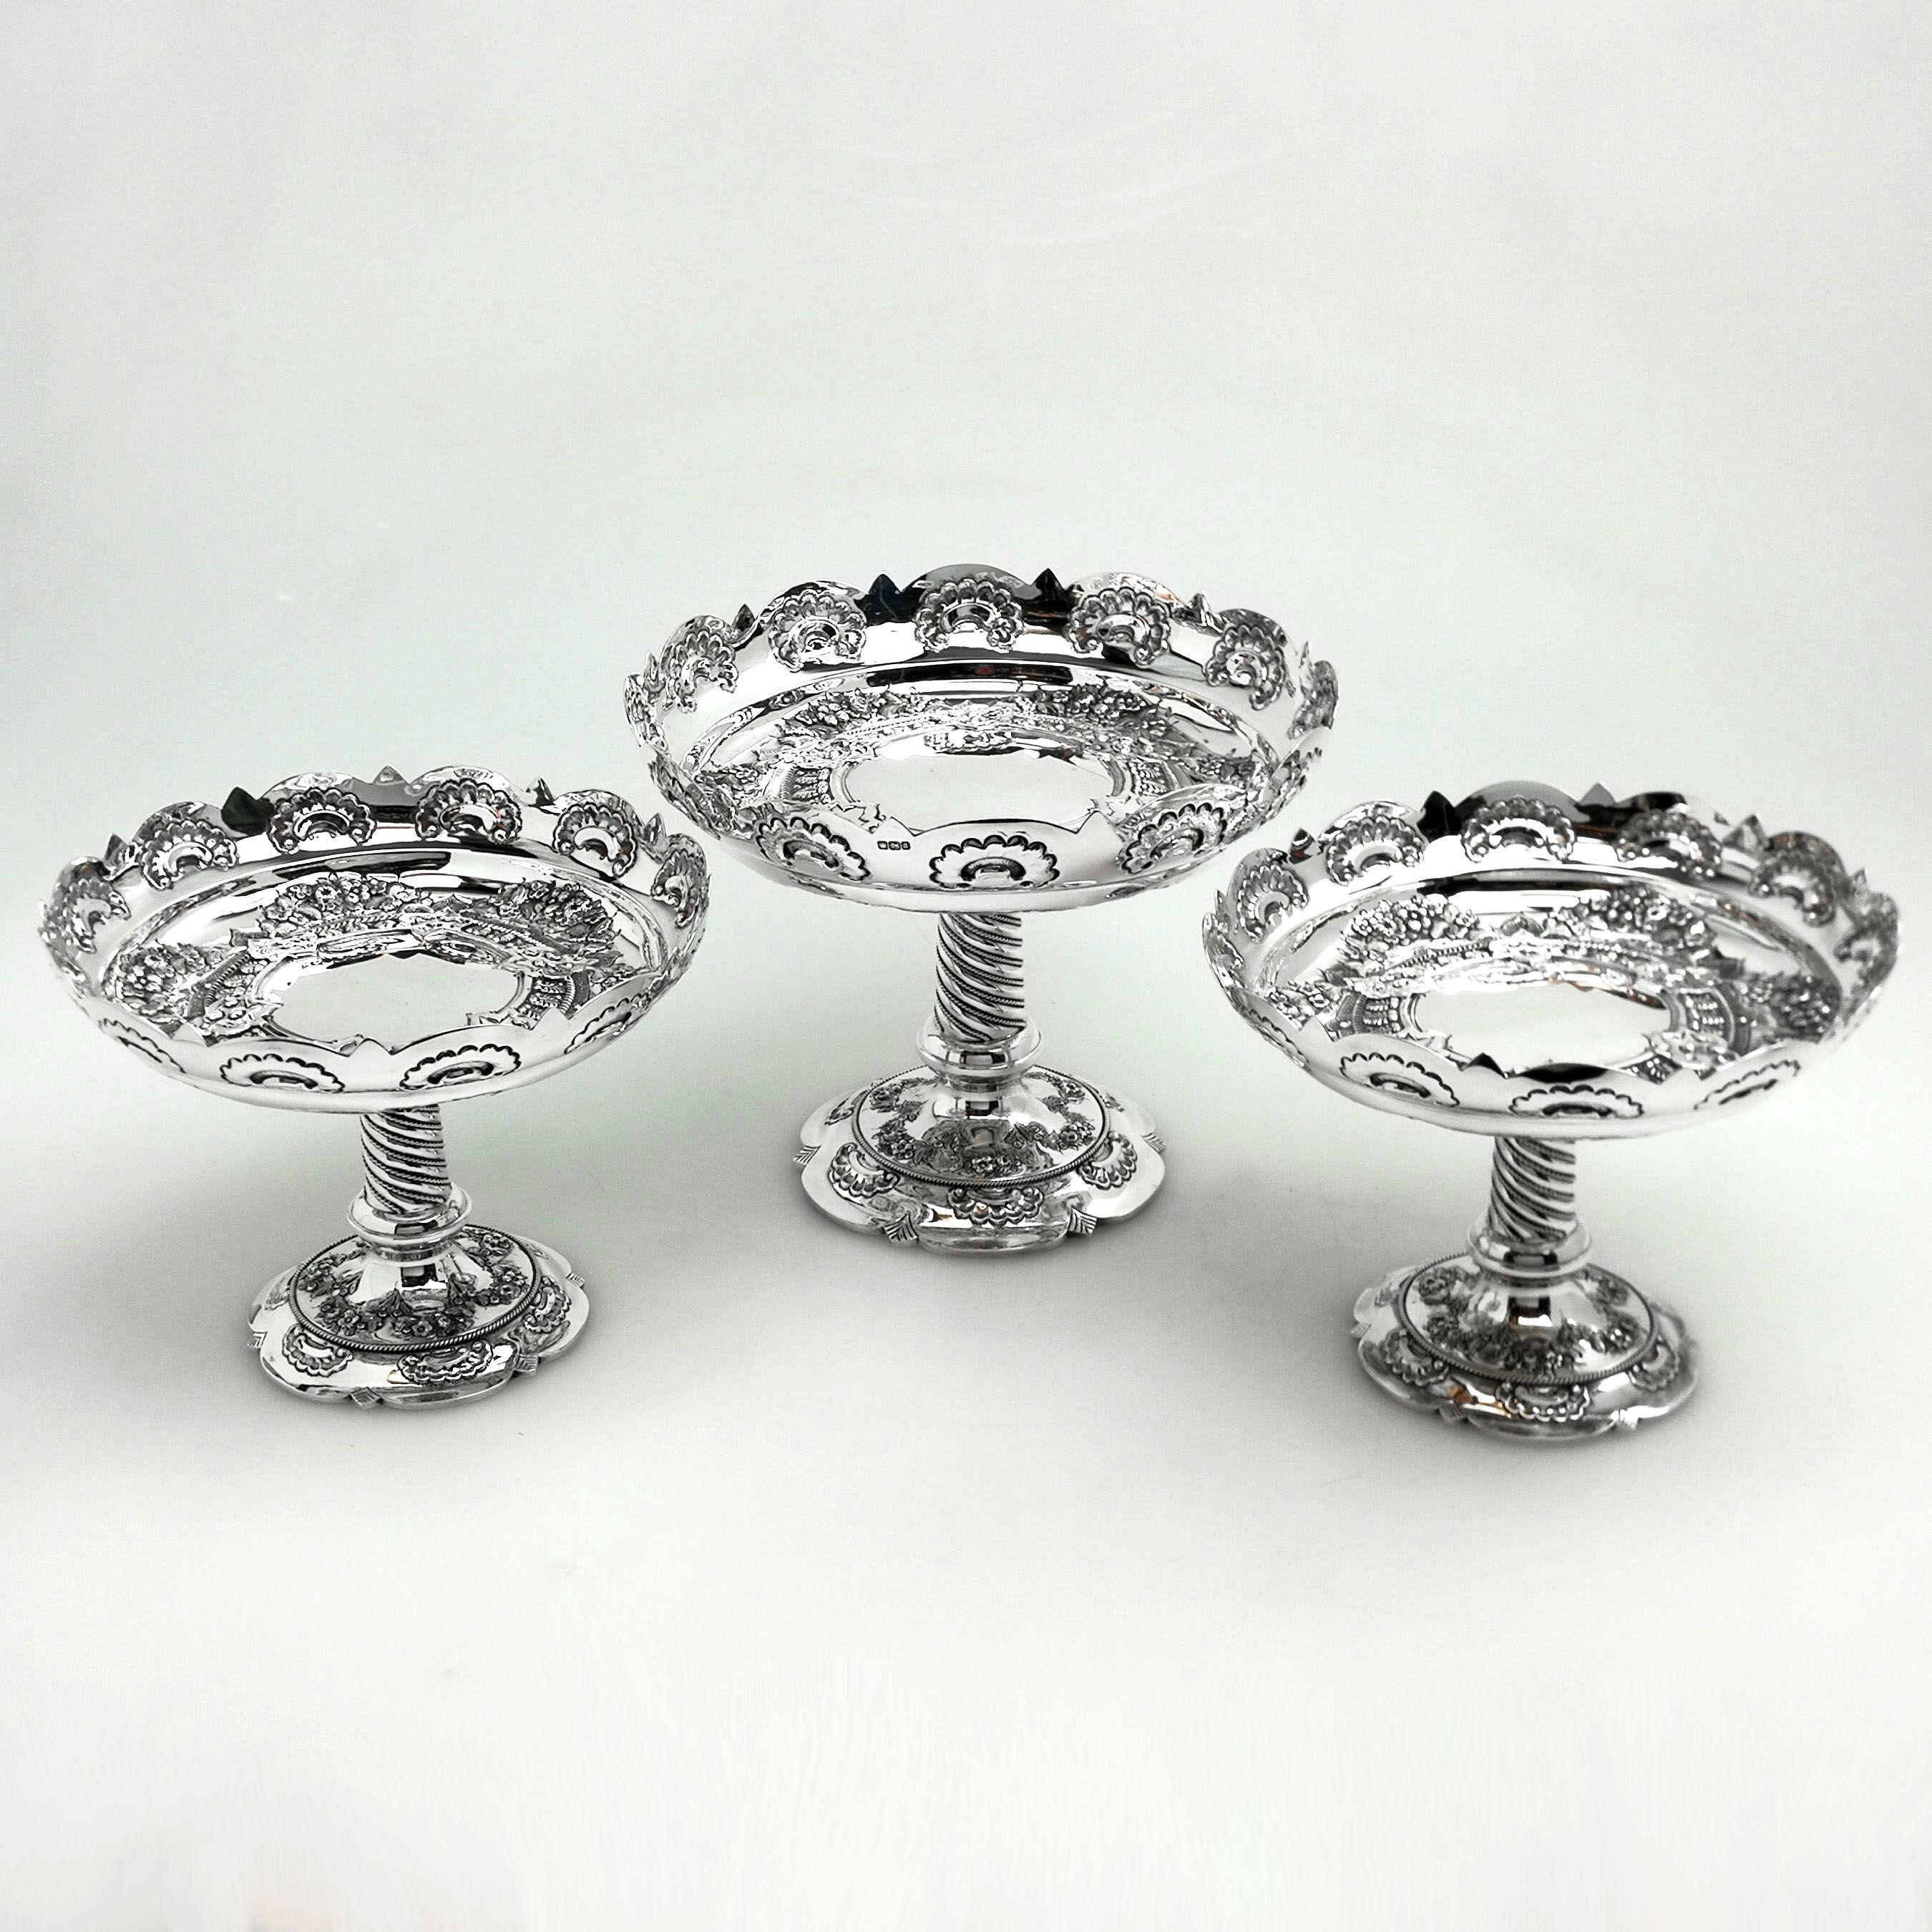 Eine schöne Suite von 3 antiken viktorianischen massivem Silber Comports / Dishes, bestehend aus einem großen Teller und zwei kleinere Gerichte abgestimmt. Dieses dreiteilige Geschirr besteht aus eleganten, flachen, ziselierten Schalen auf hohen,